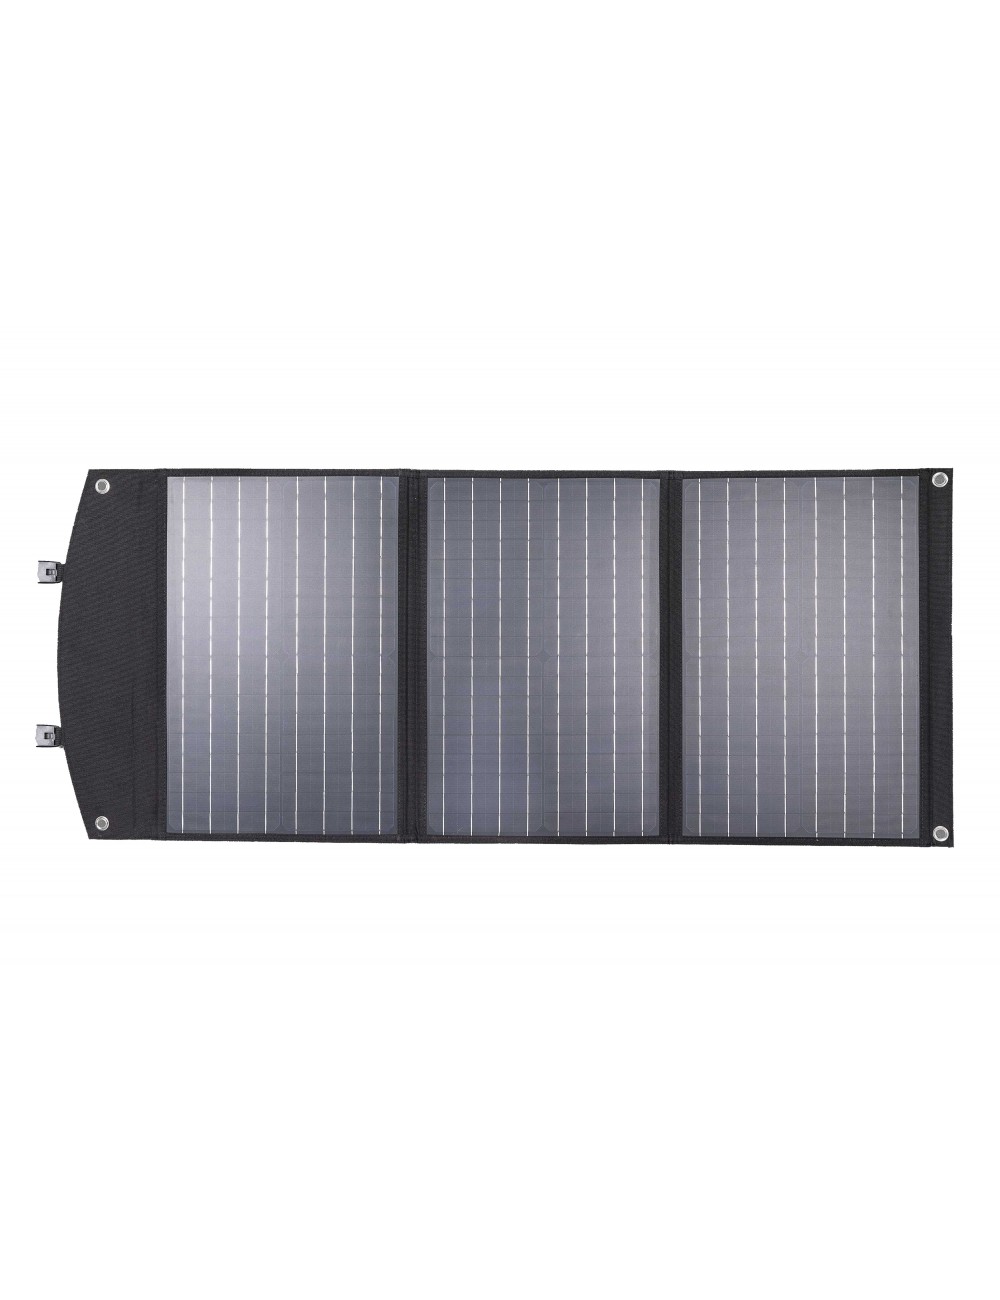 Panel solar cargador 90W plegable y portátil para cargar móviles, tablets, GPS (USB) y estaciones de energía portátiles